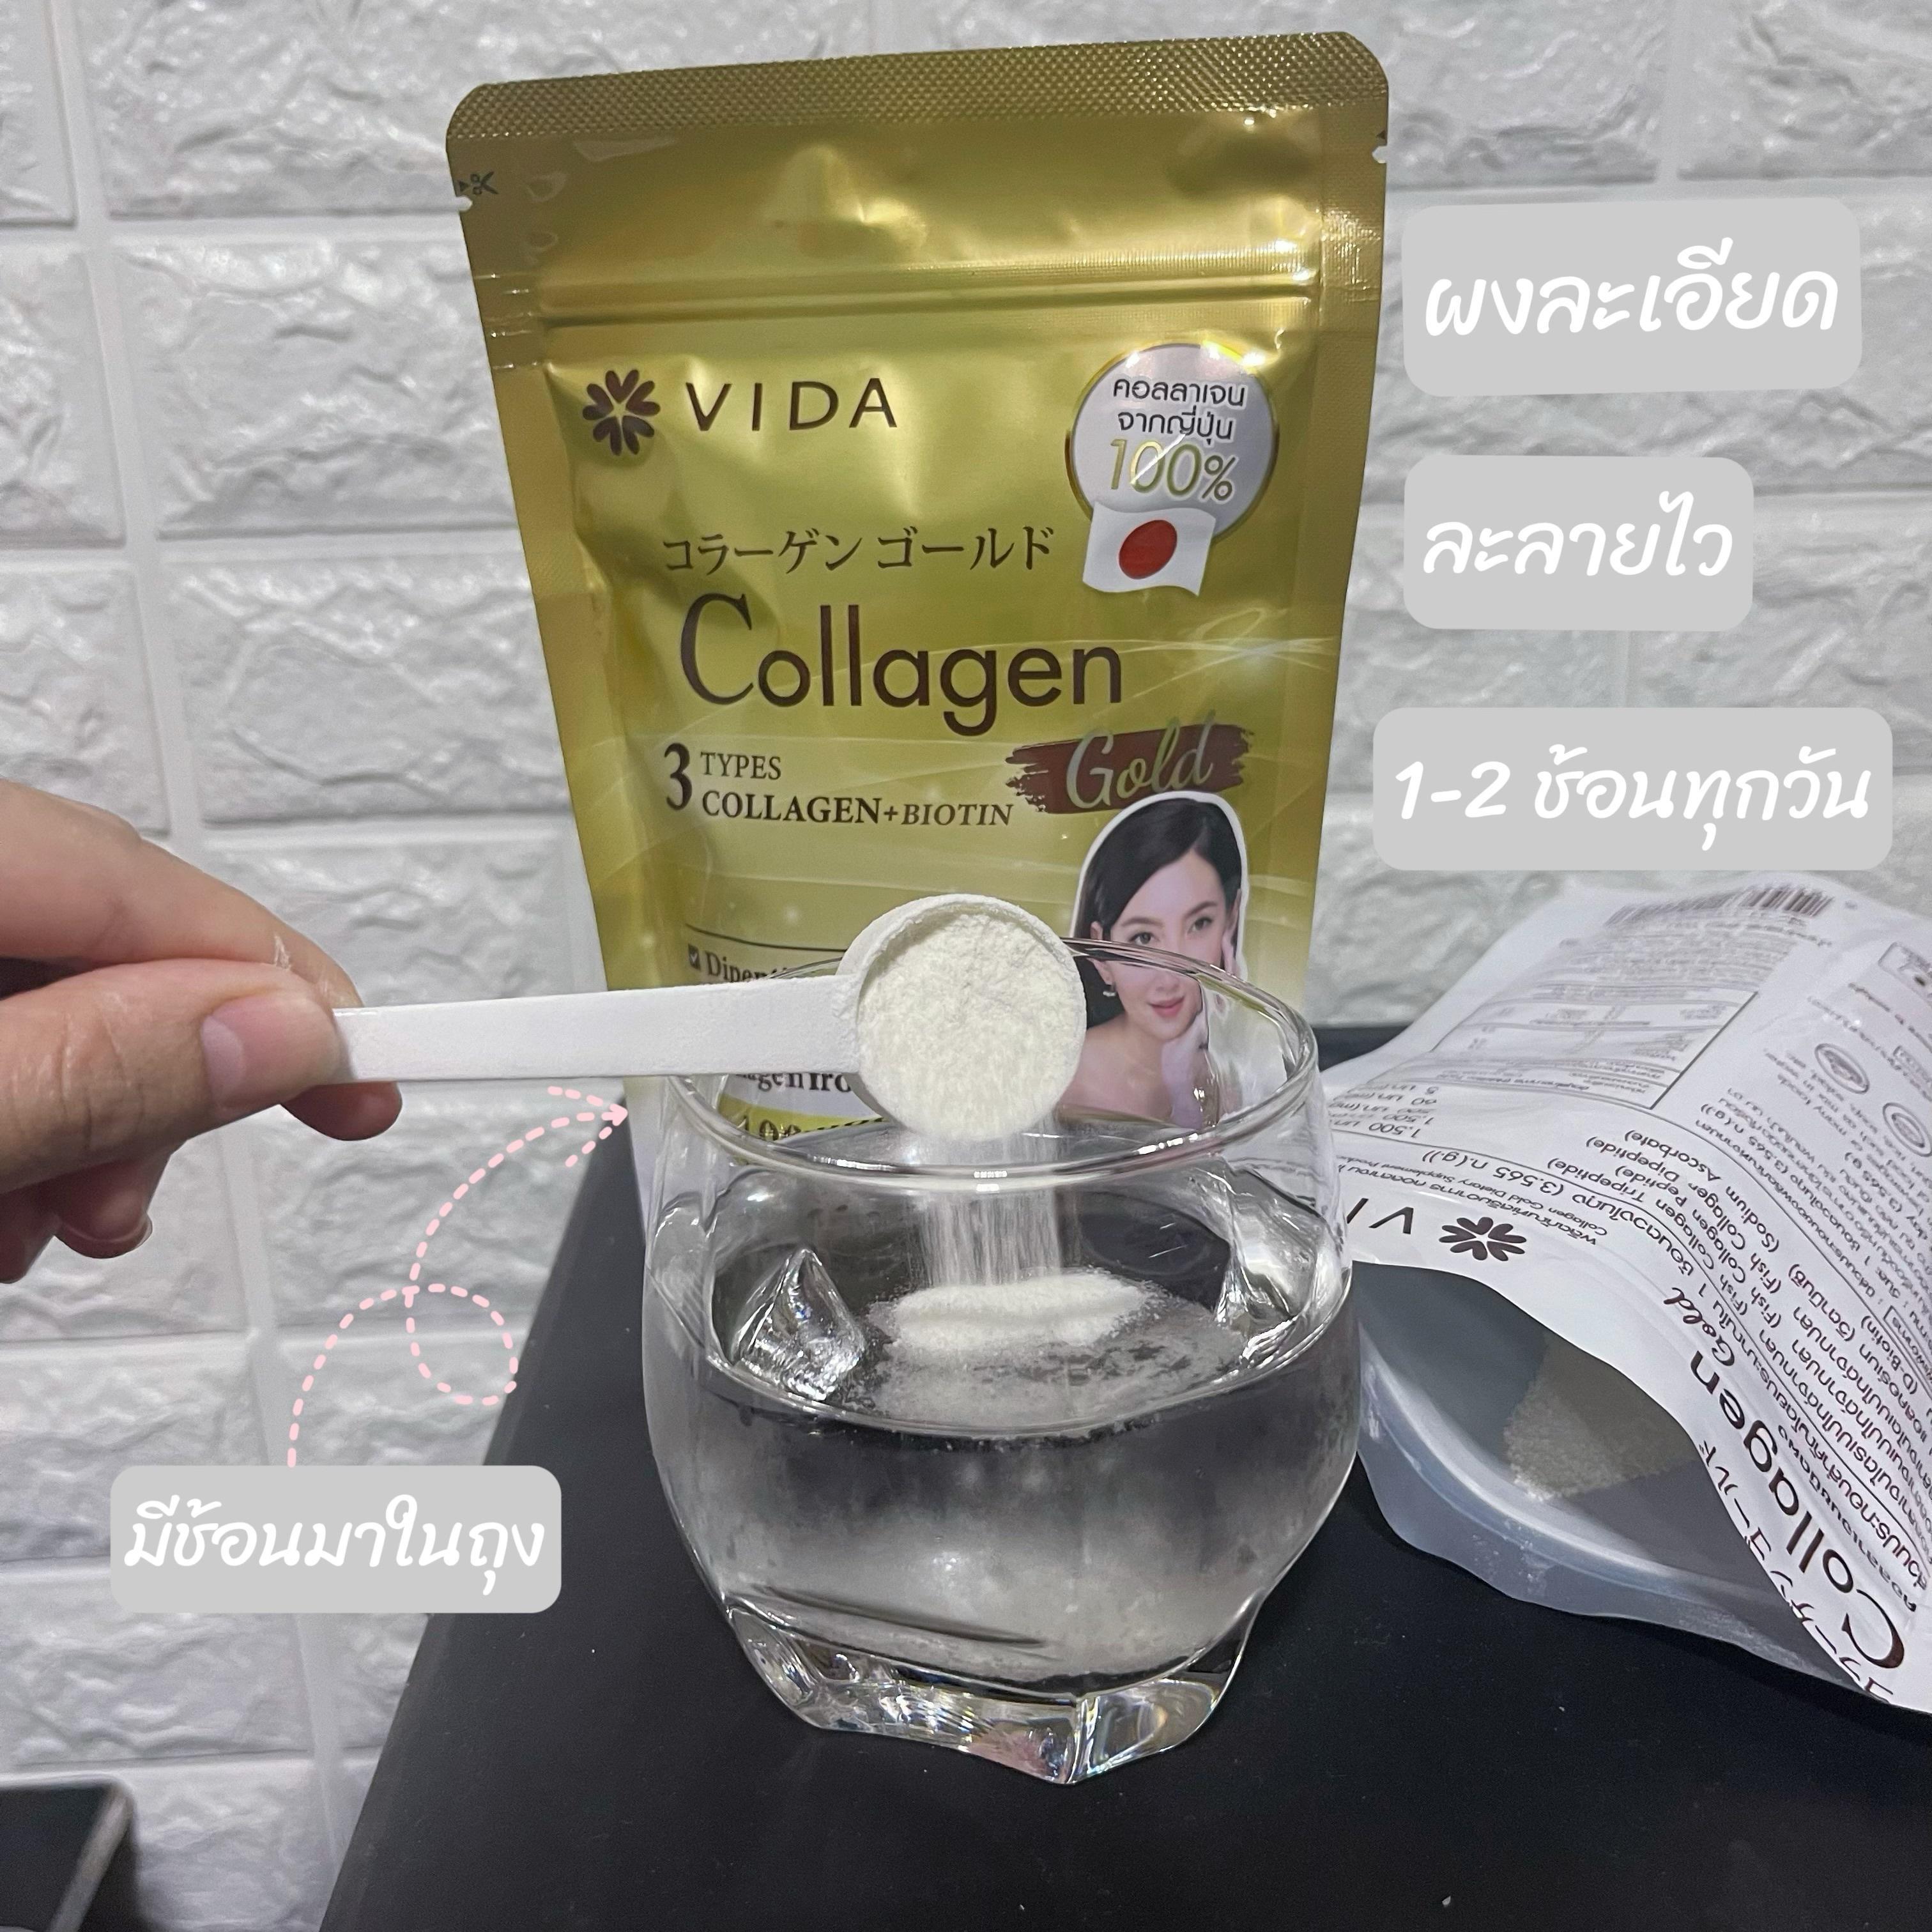 ภาพหน้าปก คอลลาเจนตัวโปรด VIDA Collagen gold จากคอลลาเจนจากญี่ปุ่น ที่:1